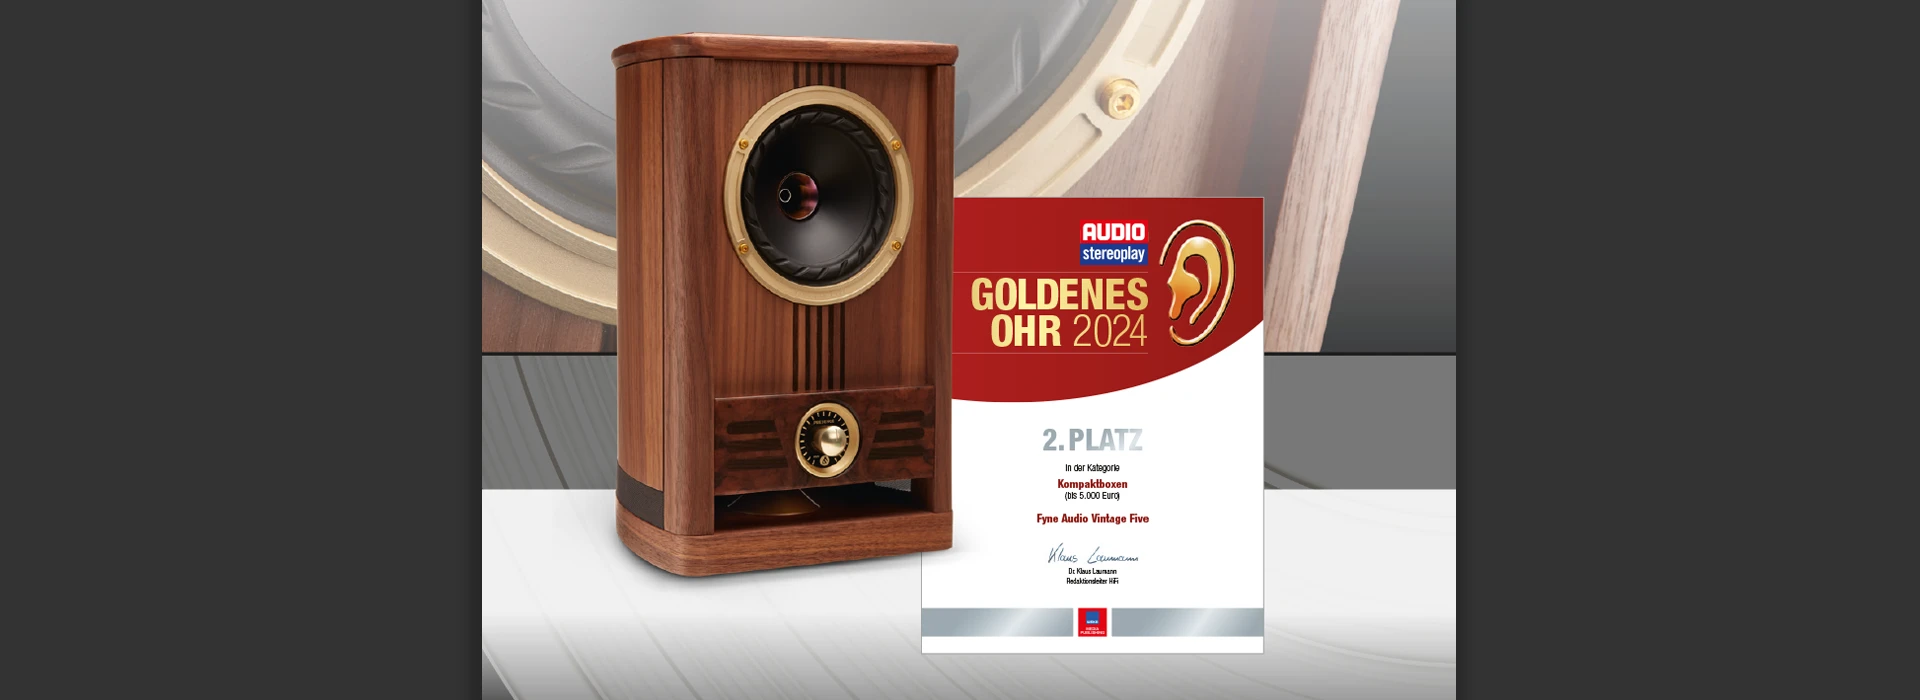 Goldenes Ohr 2024 | Auszeichnung für Fyne Audio Vintage Five